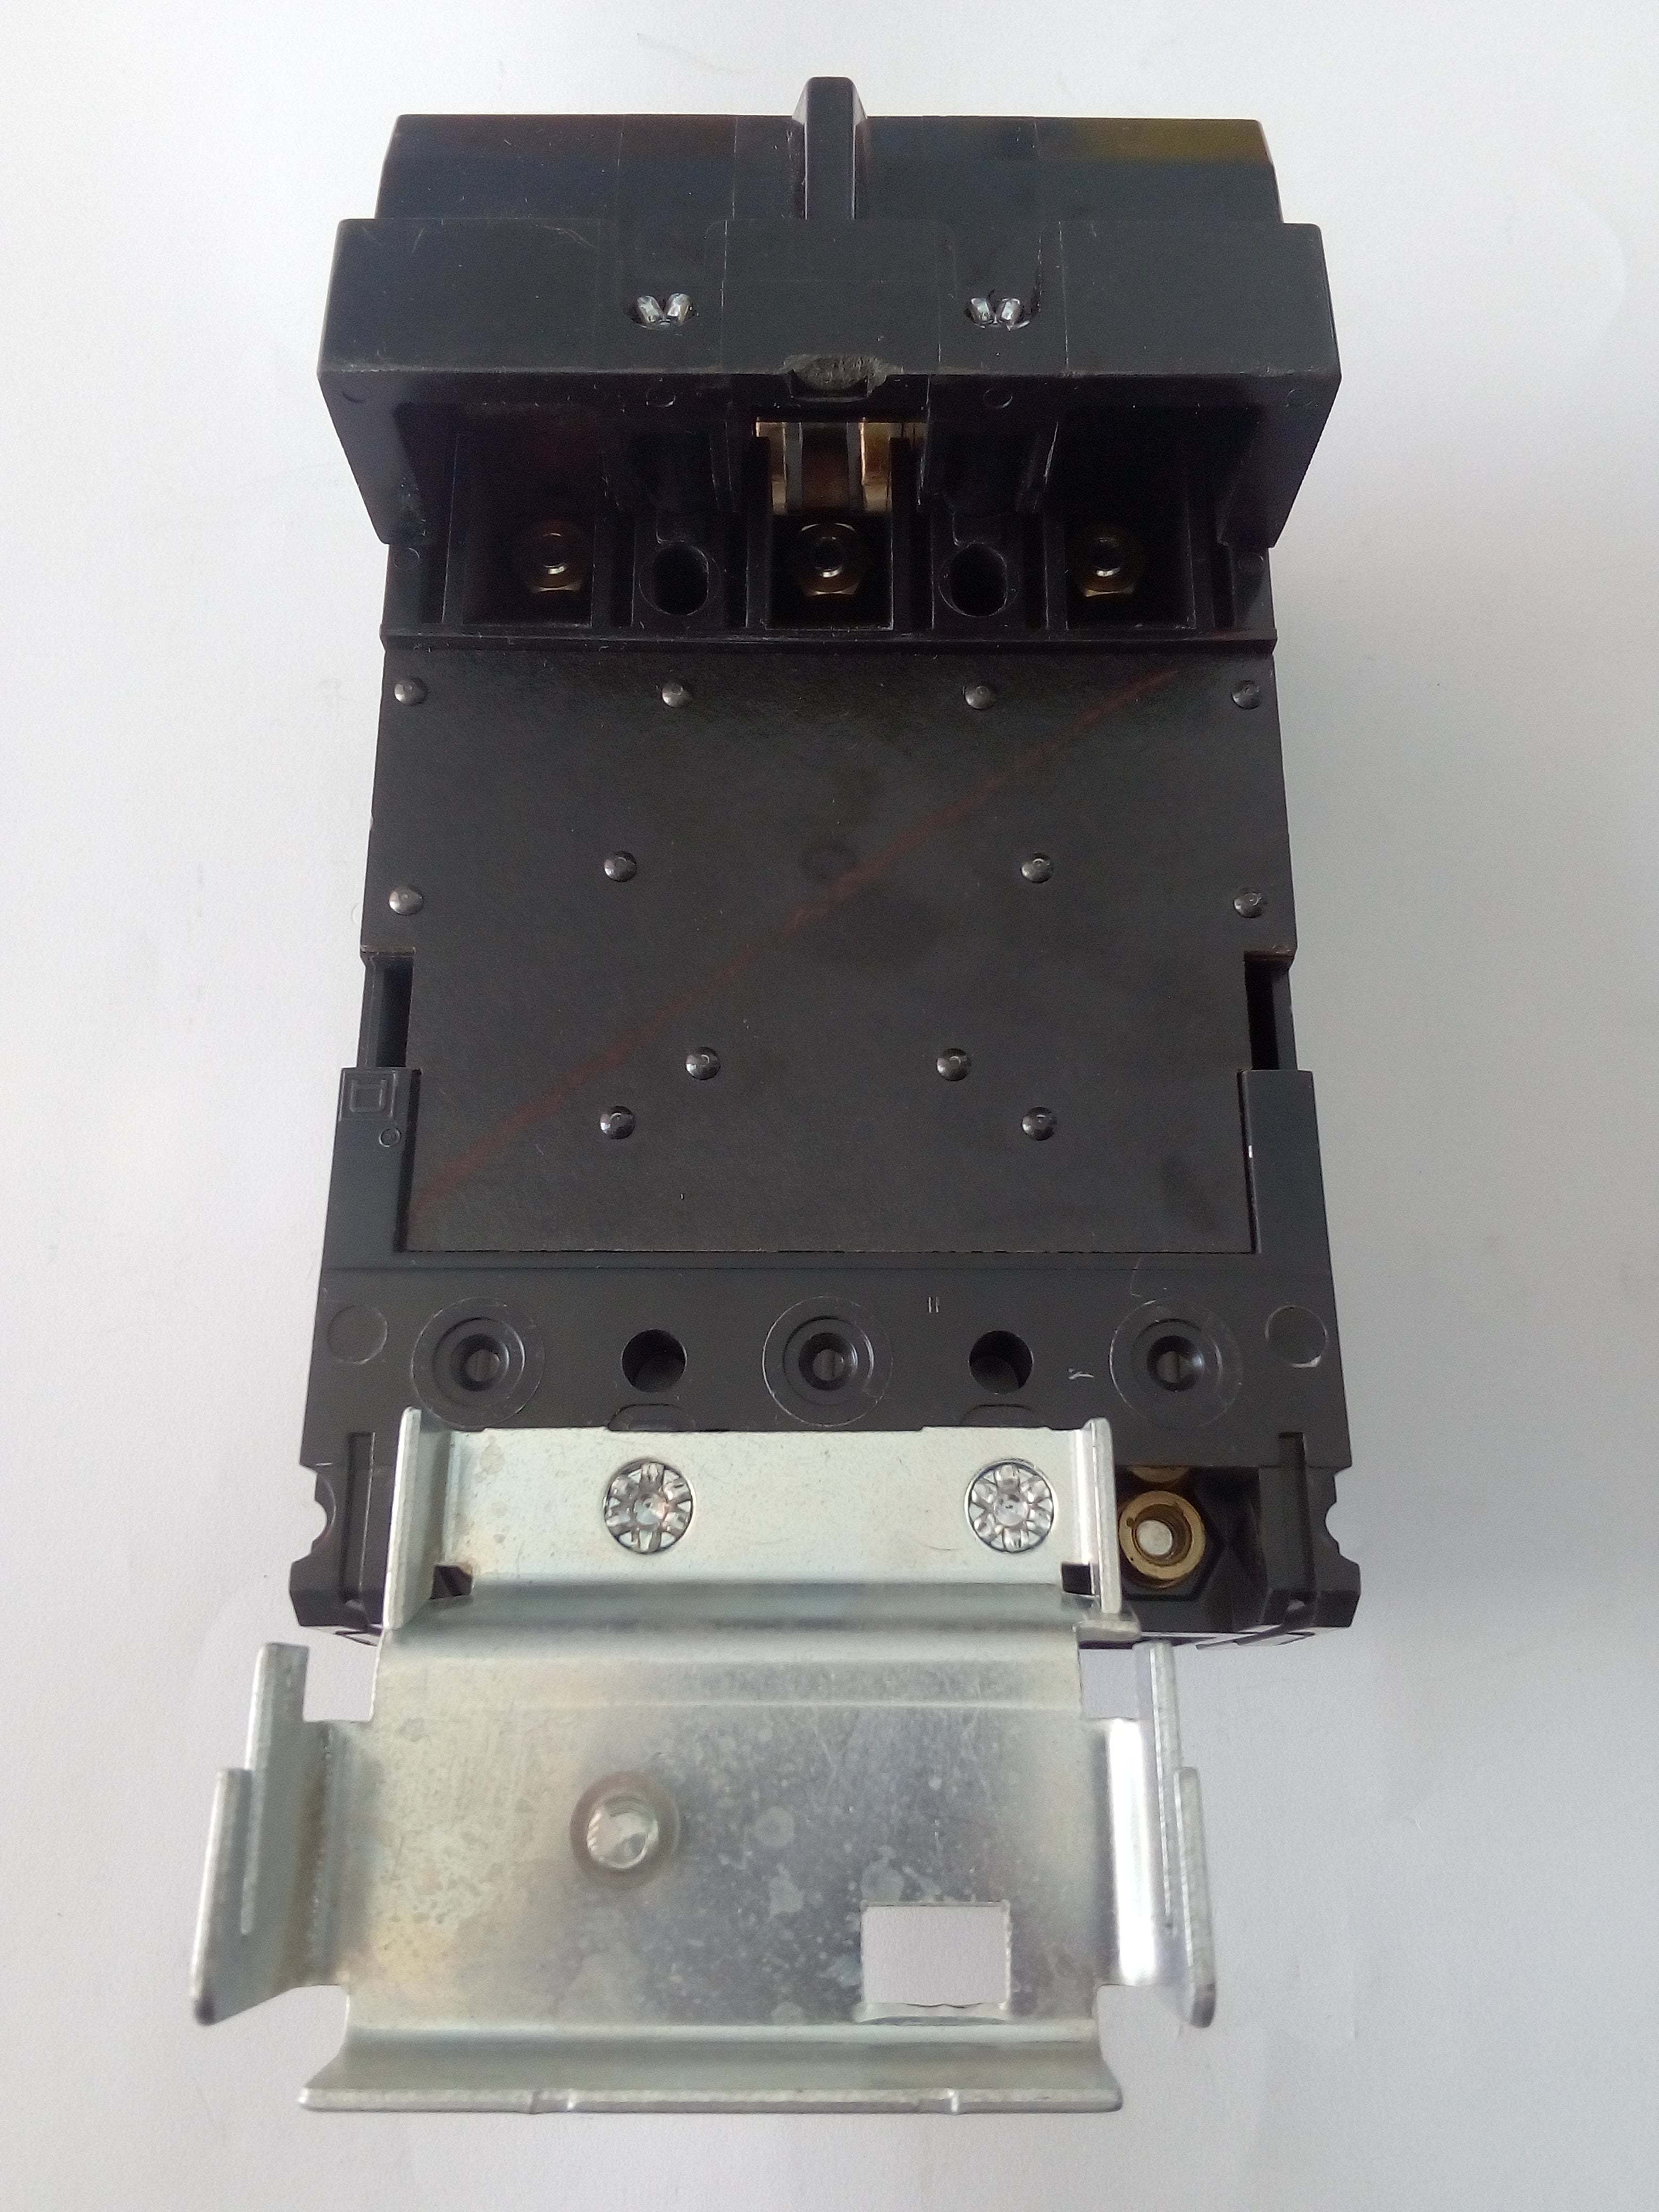 Interruptor Square D FA32050